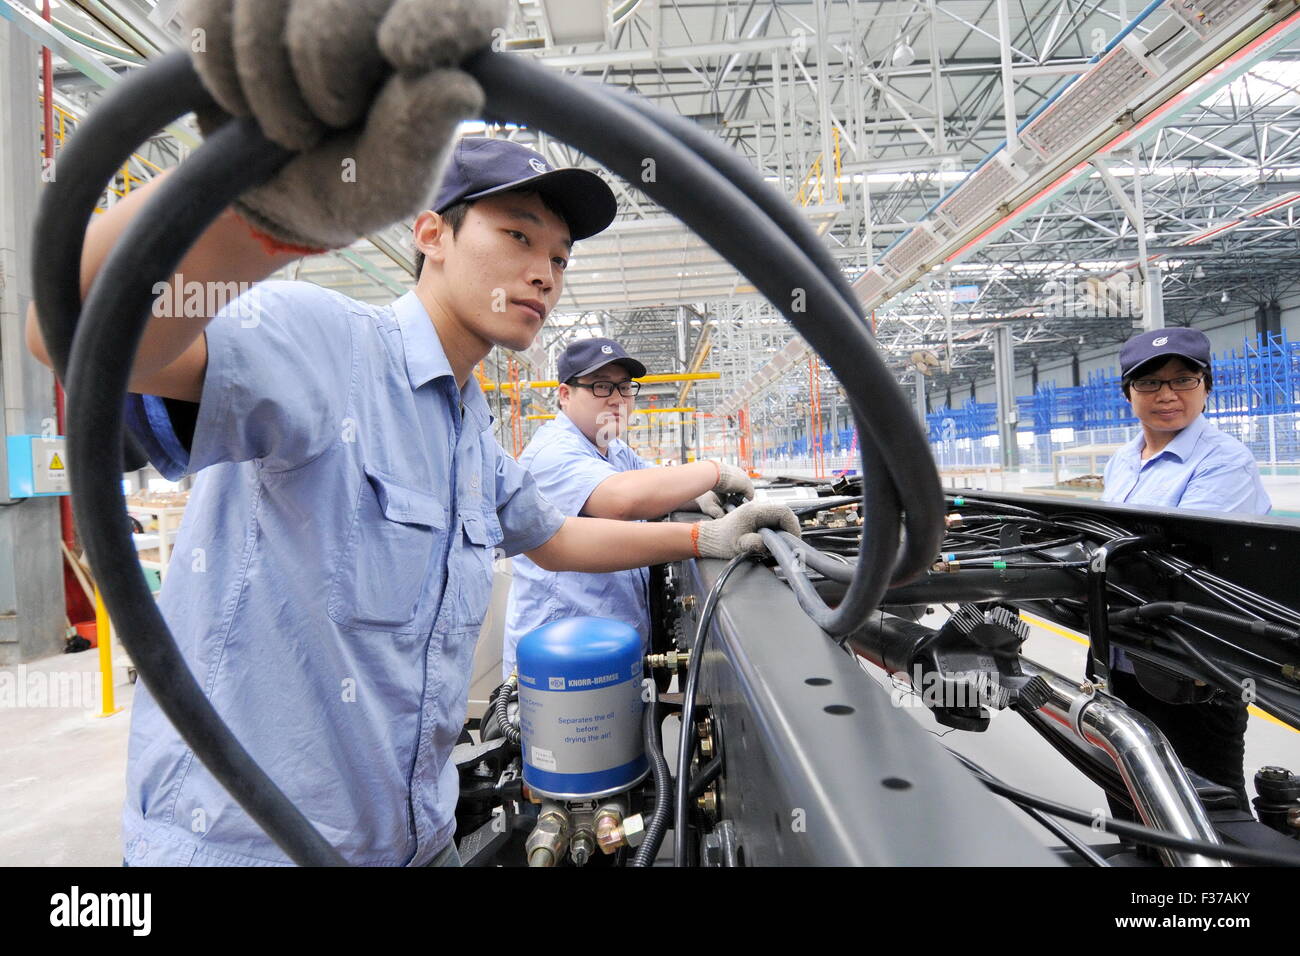 (151001) -- XINGTAI, 1 ottobre, 2015 (Xinhua) -- i lavoratori lavorano su una linea di produzione a base di produzione dell' industria aeronautica Corporation della Cina in Xingtai, nel nord della Cina di nella provincia di Hebei, Sett. 11, 2015. Della Cina di manufacturing purchasing managers index" (PMI) è entrato al 49,8 in settembre, fino dal 49,7 per il mese di agosto, secondo i dati pubblicati dall'Ufficio Nazionale di Statistica (NBS) e la Federazione cinese di logistica e acquisti di giovedì. (Xinhua/Zhu Xudong) (lfj) Foto Stock